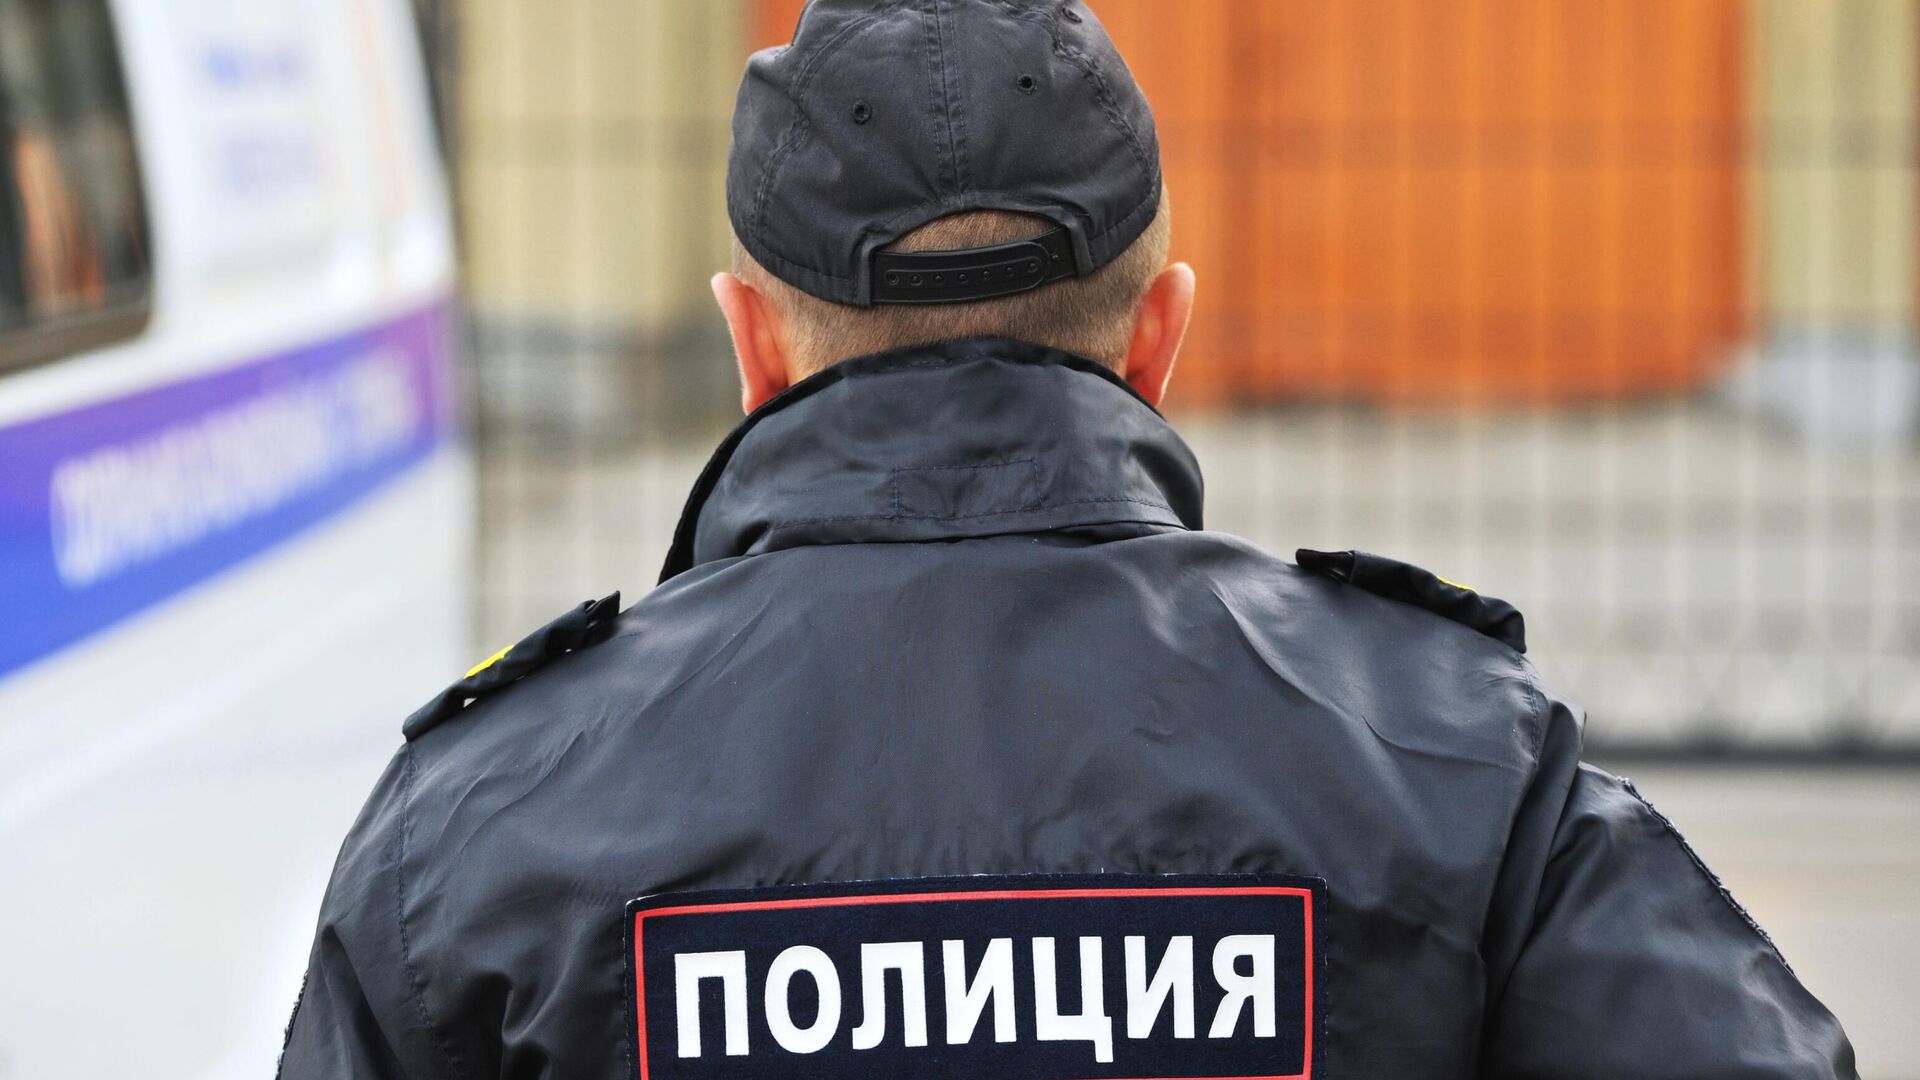 Сотрудник полиции Управления министерства внутренних дел Российской Федерации1